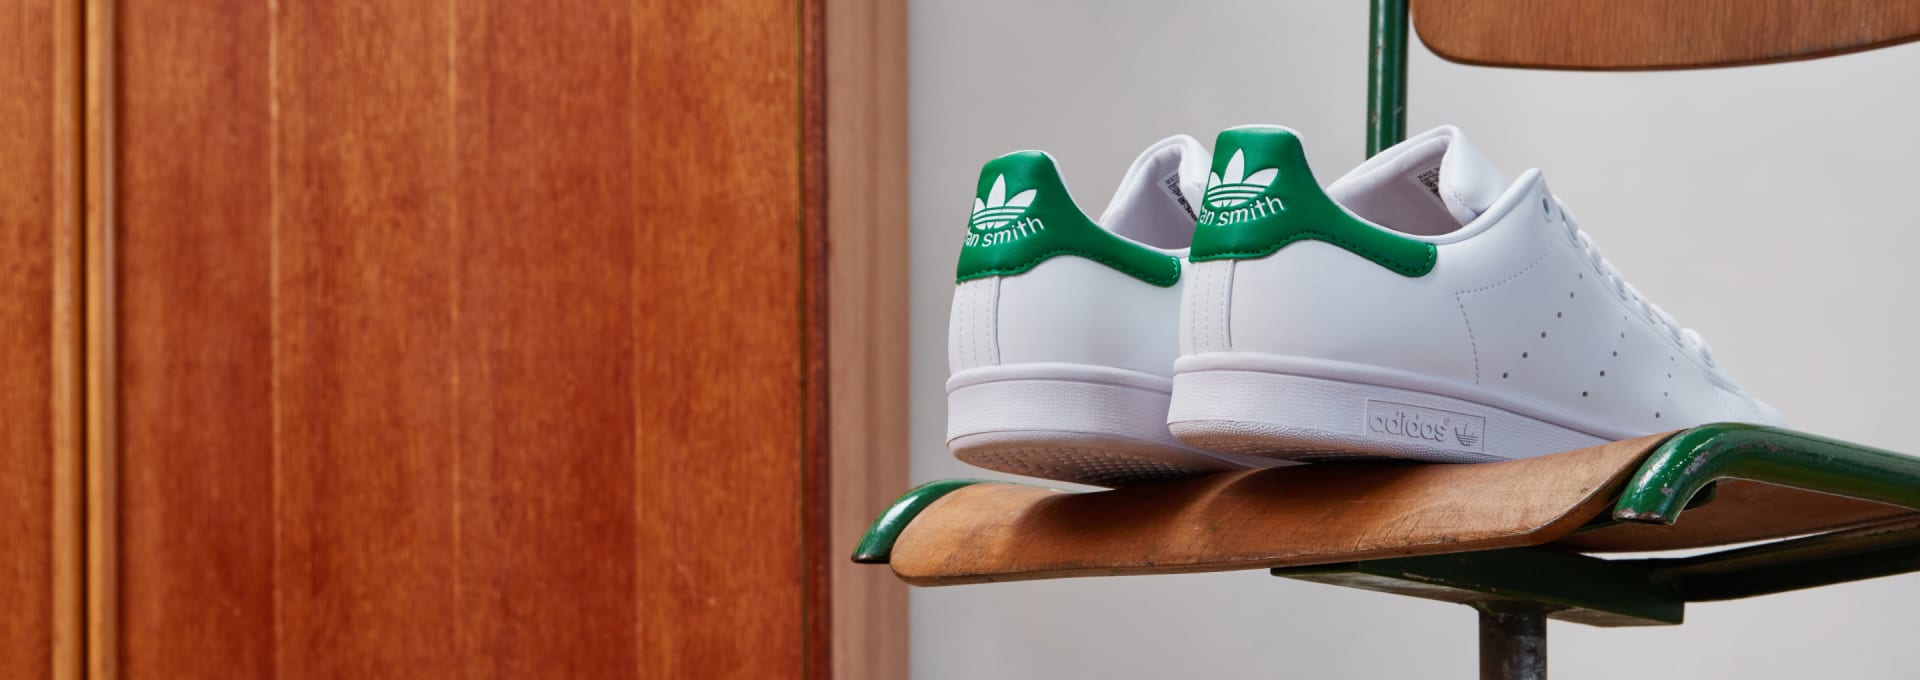 Beginner Bedoel Helm Shop iconische sneakers van Stan Smith online | adidas